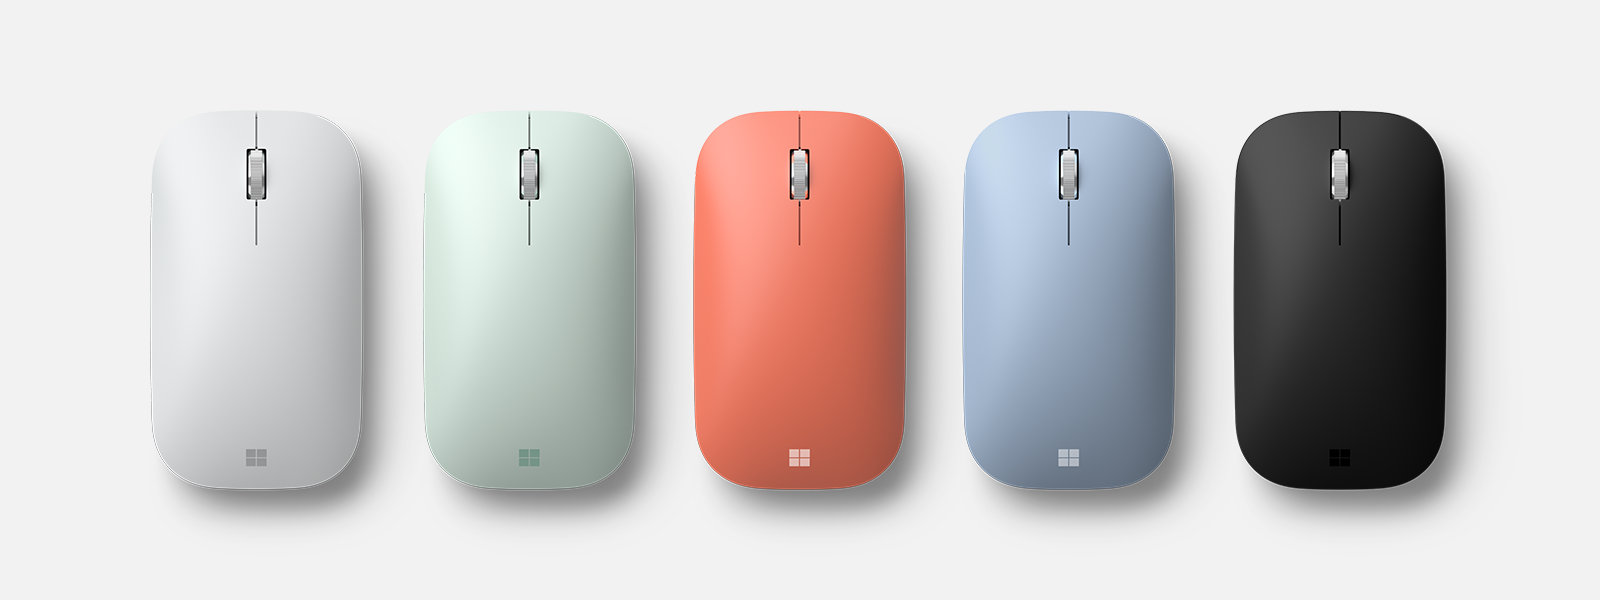 Microsoft Modern Mobile Mouse có nhiều màu sắc khác nhau